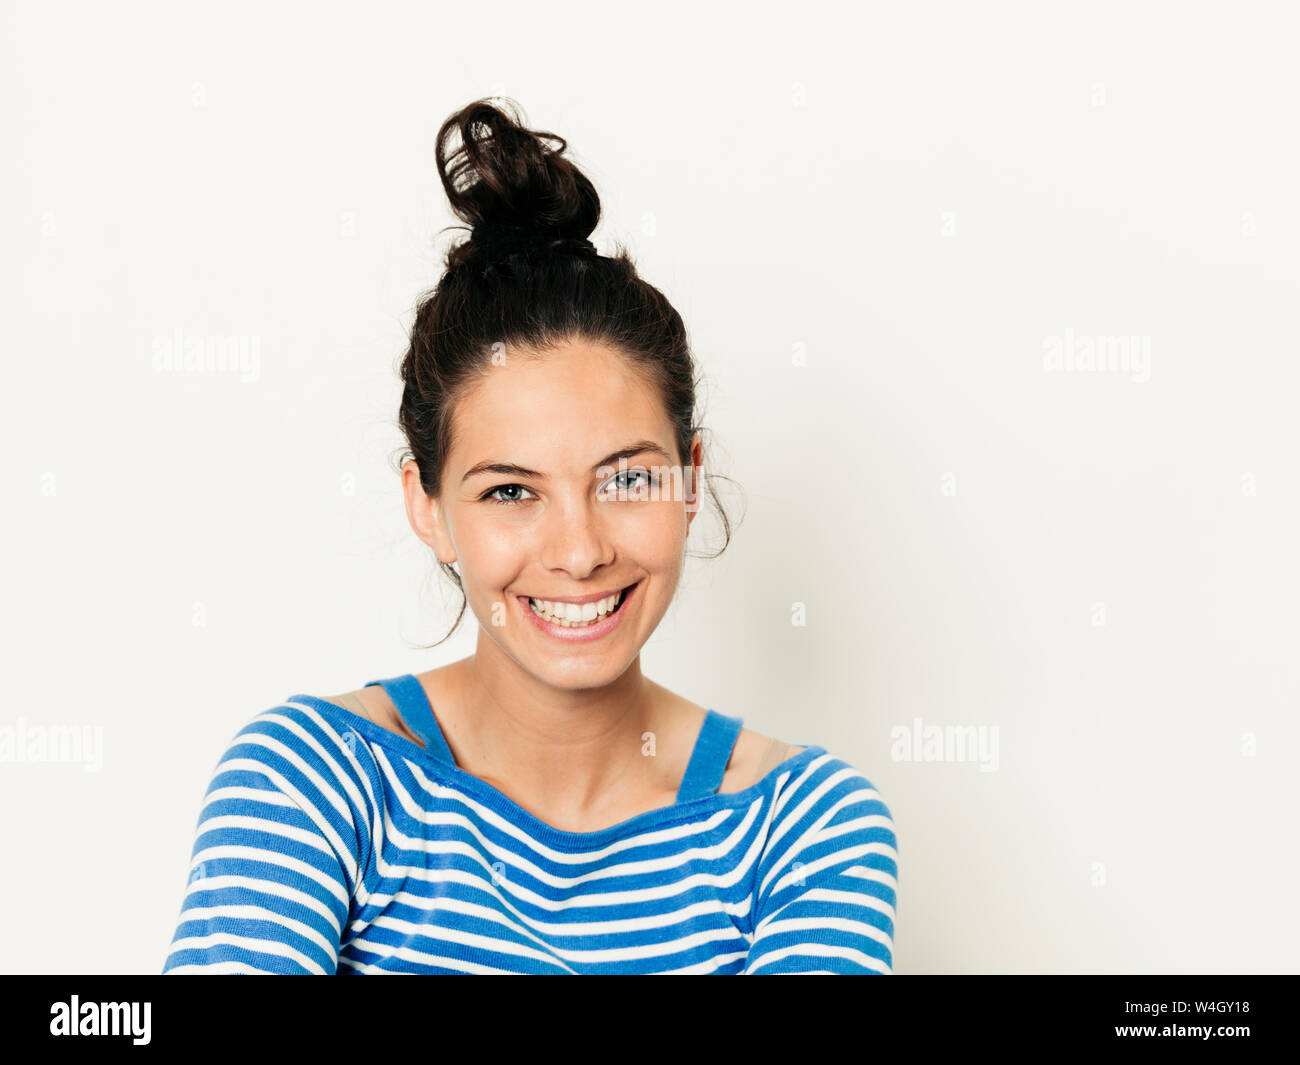 Schöne junge Frau mit schwarzen Haaren und blau-weiß gestreiften Pullover ist vor weißem Hintergrund posiert Stockfoto